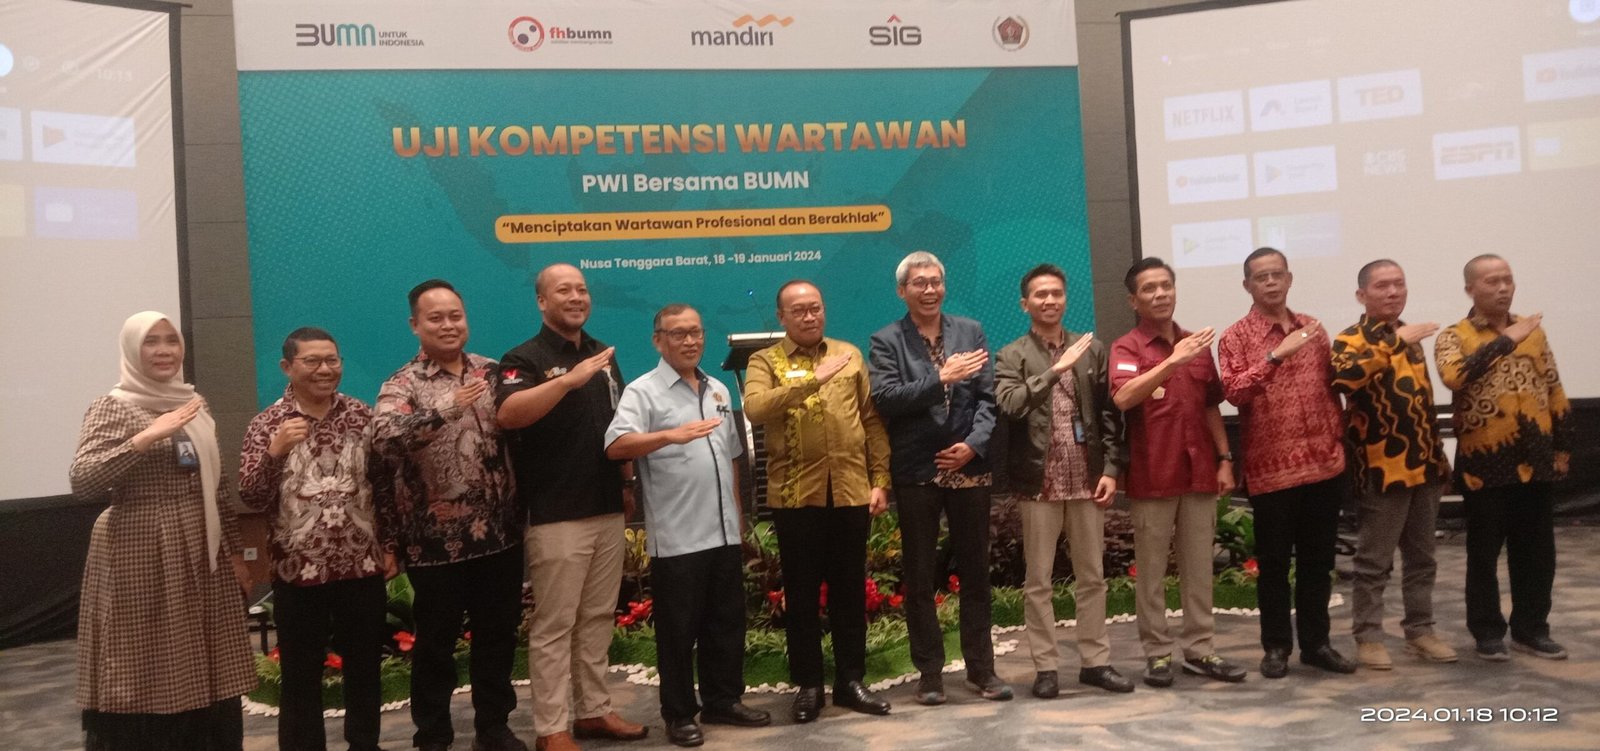 PT Bank Mandiri dan Semen Indonesia Harapkan UKW PWI NTB Ciptakan Wartawan Berkualitas